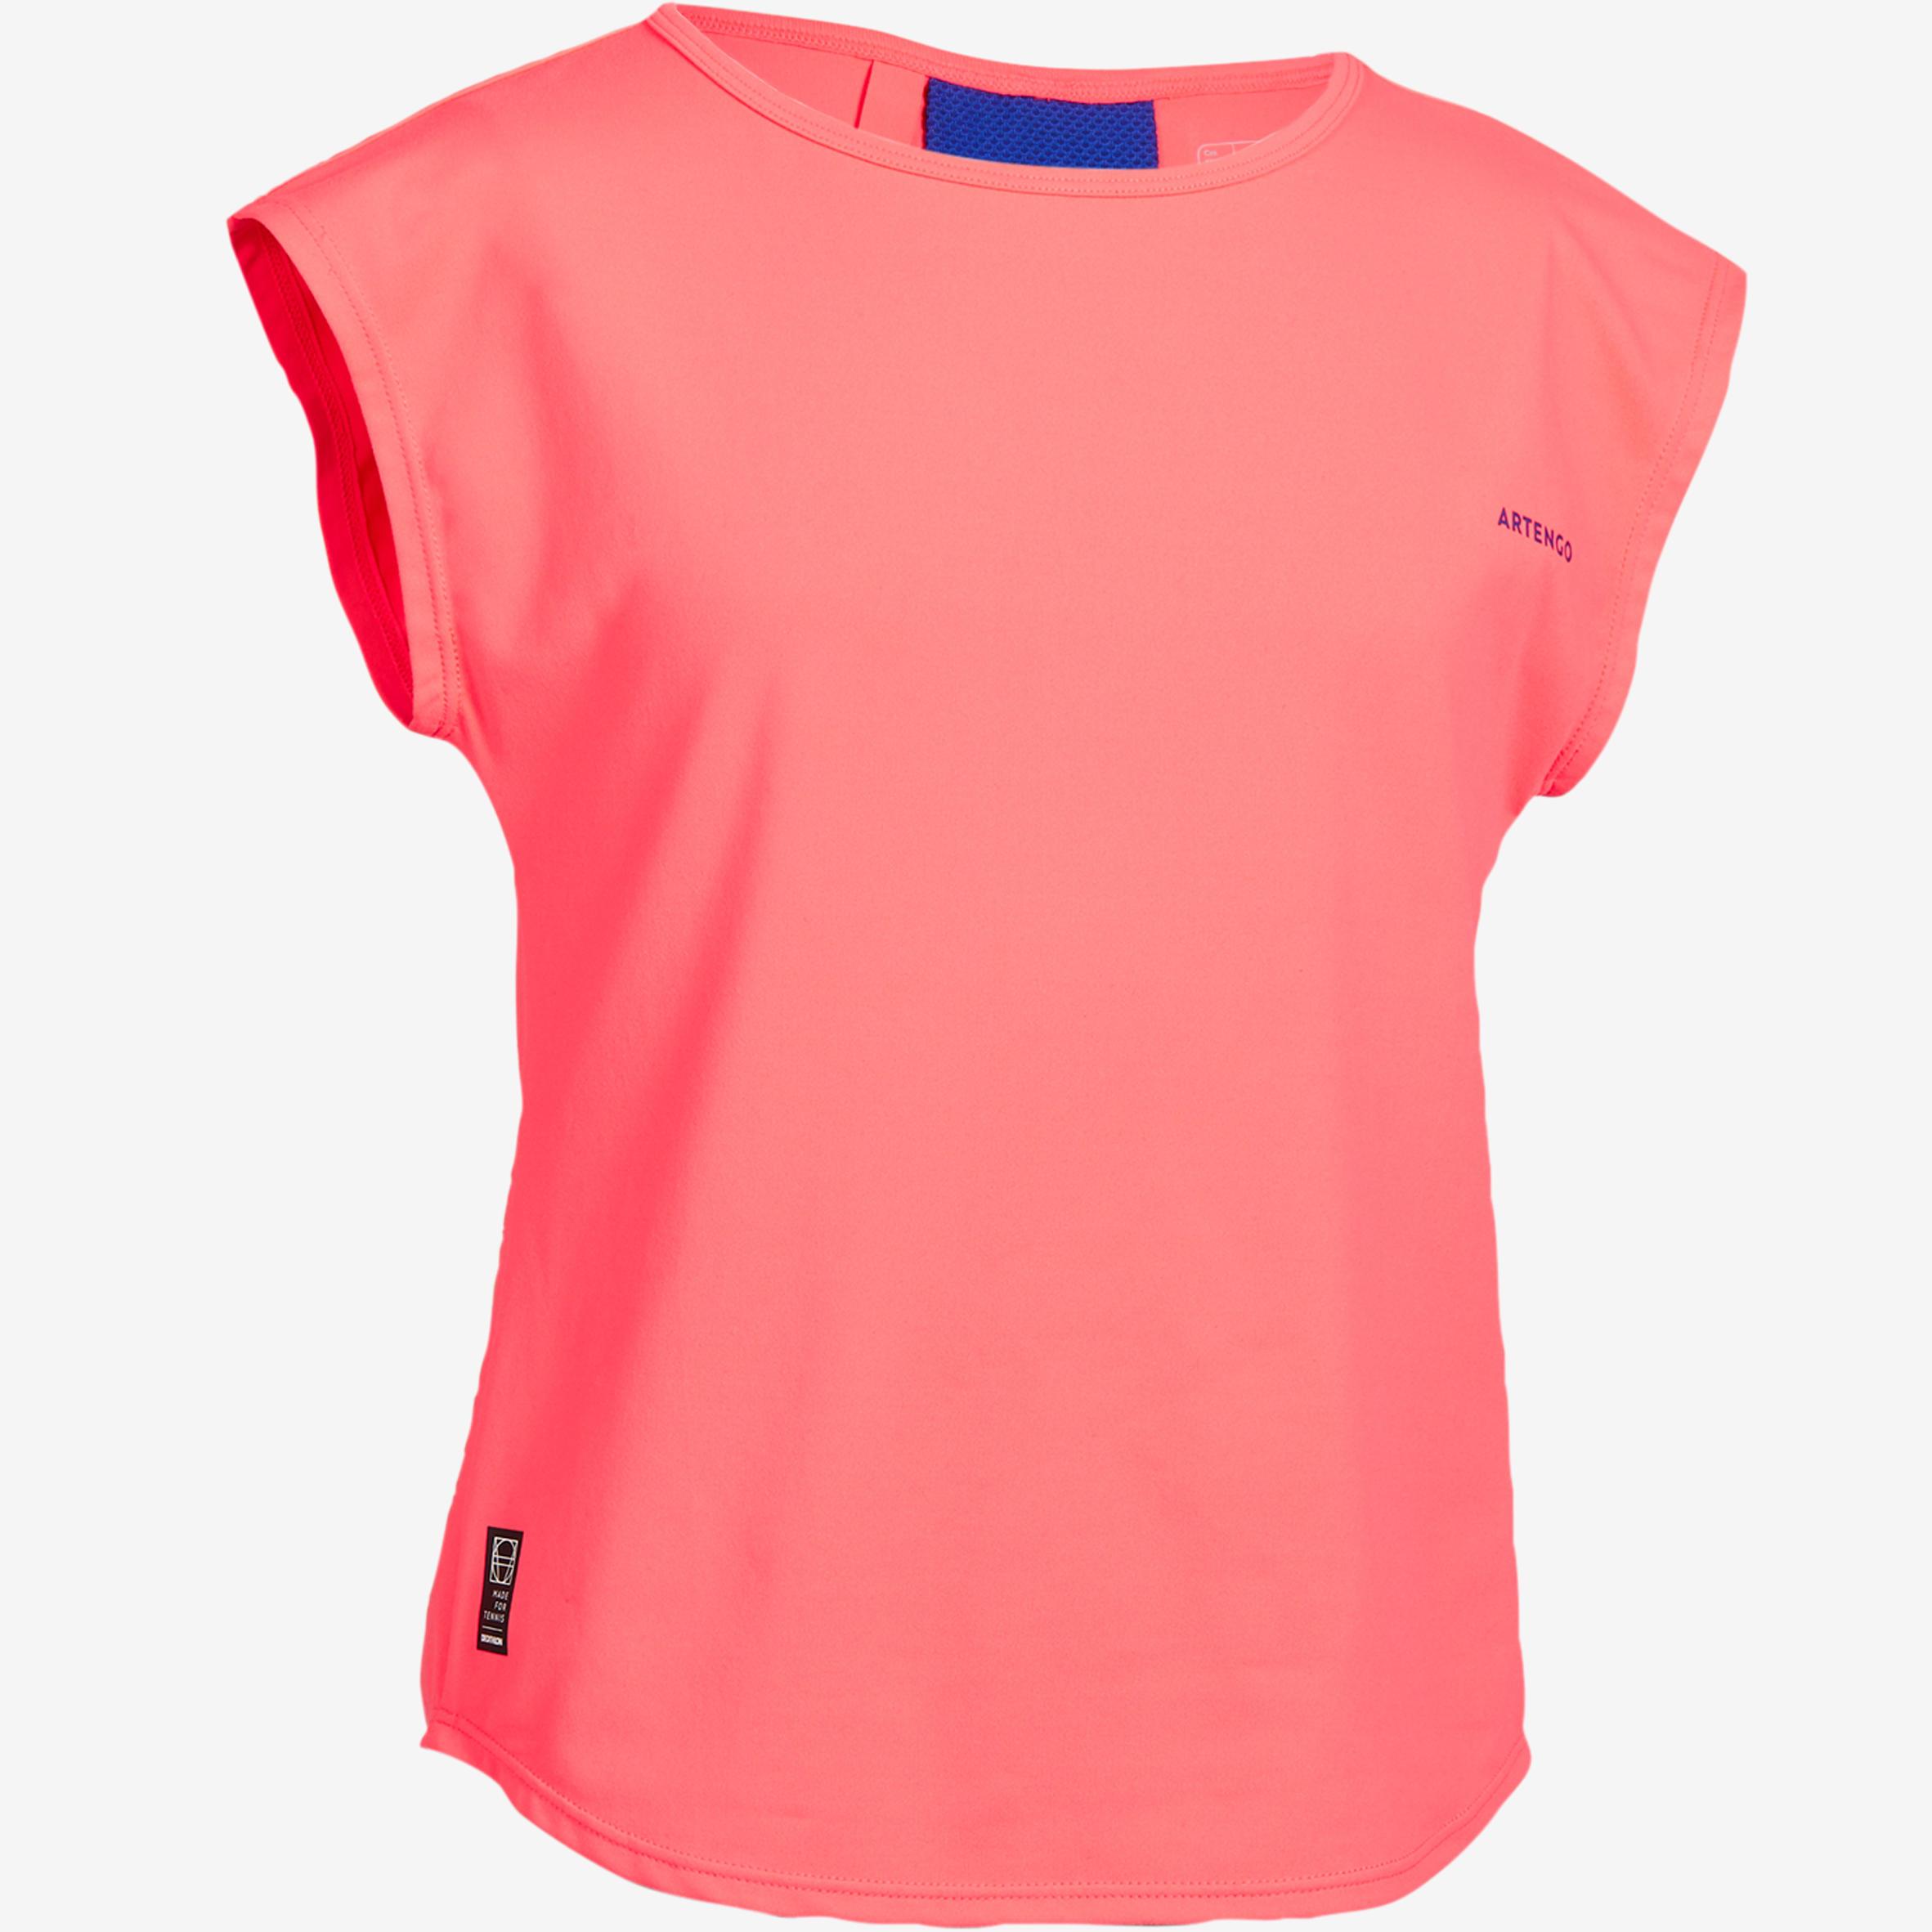 [ด่วน!! โปรโมชั่นมีจำนวนจำกัด] เสื้อยืดสำหรับเด็กผู้หญิงรุ่น 500 (สีชมพู) สำหรับ เทนนิส พาเดิล